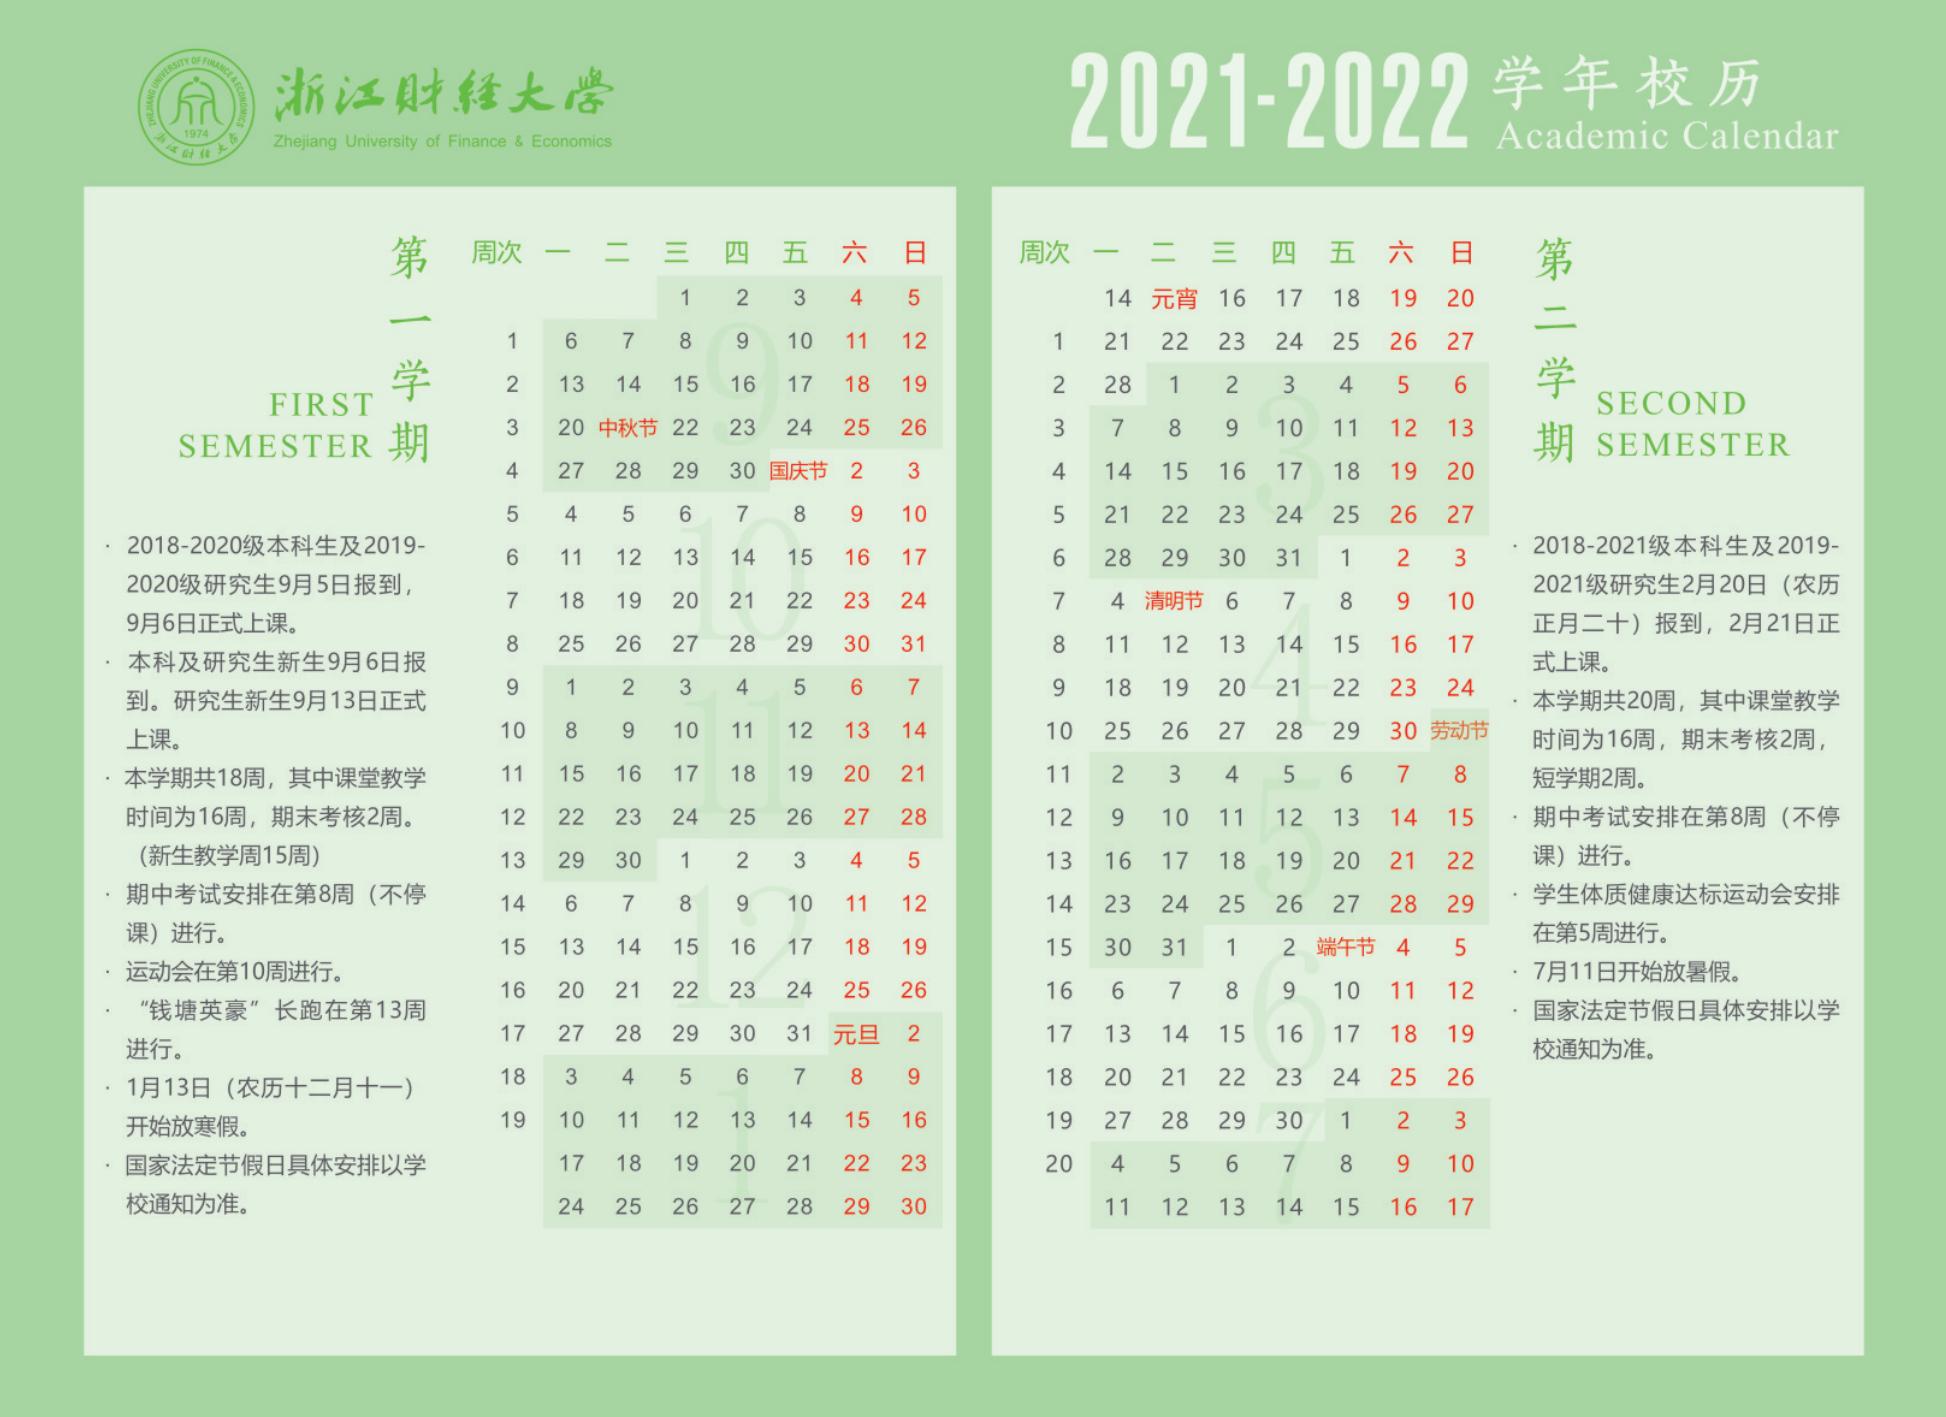 2022浙江财经大学寒假放假时间公布 几号开始放寒假